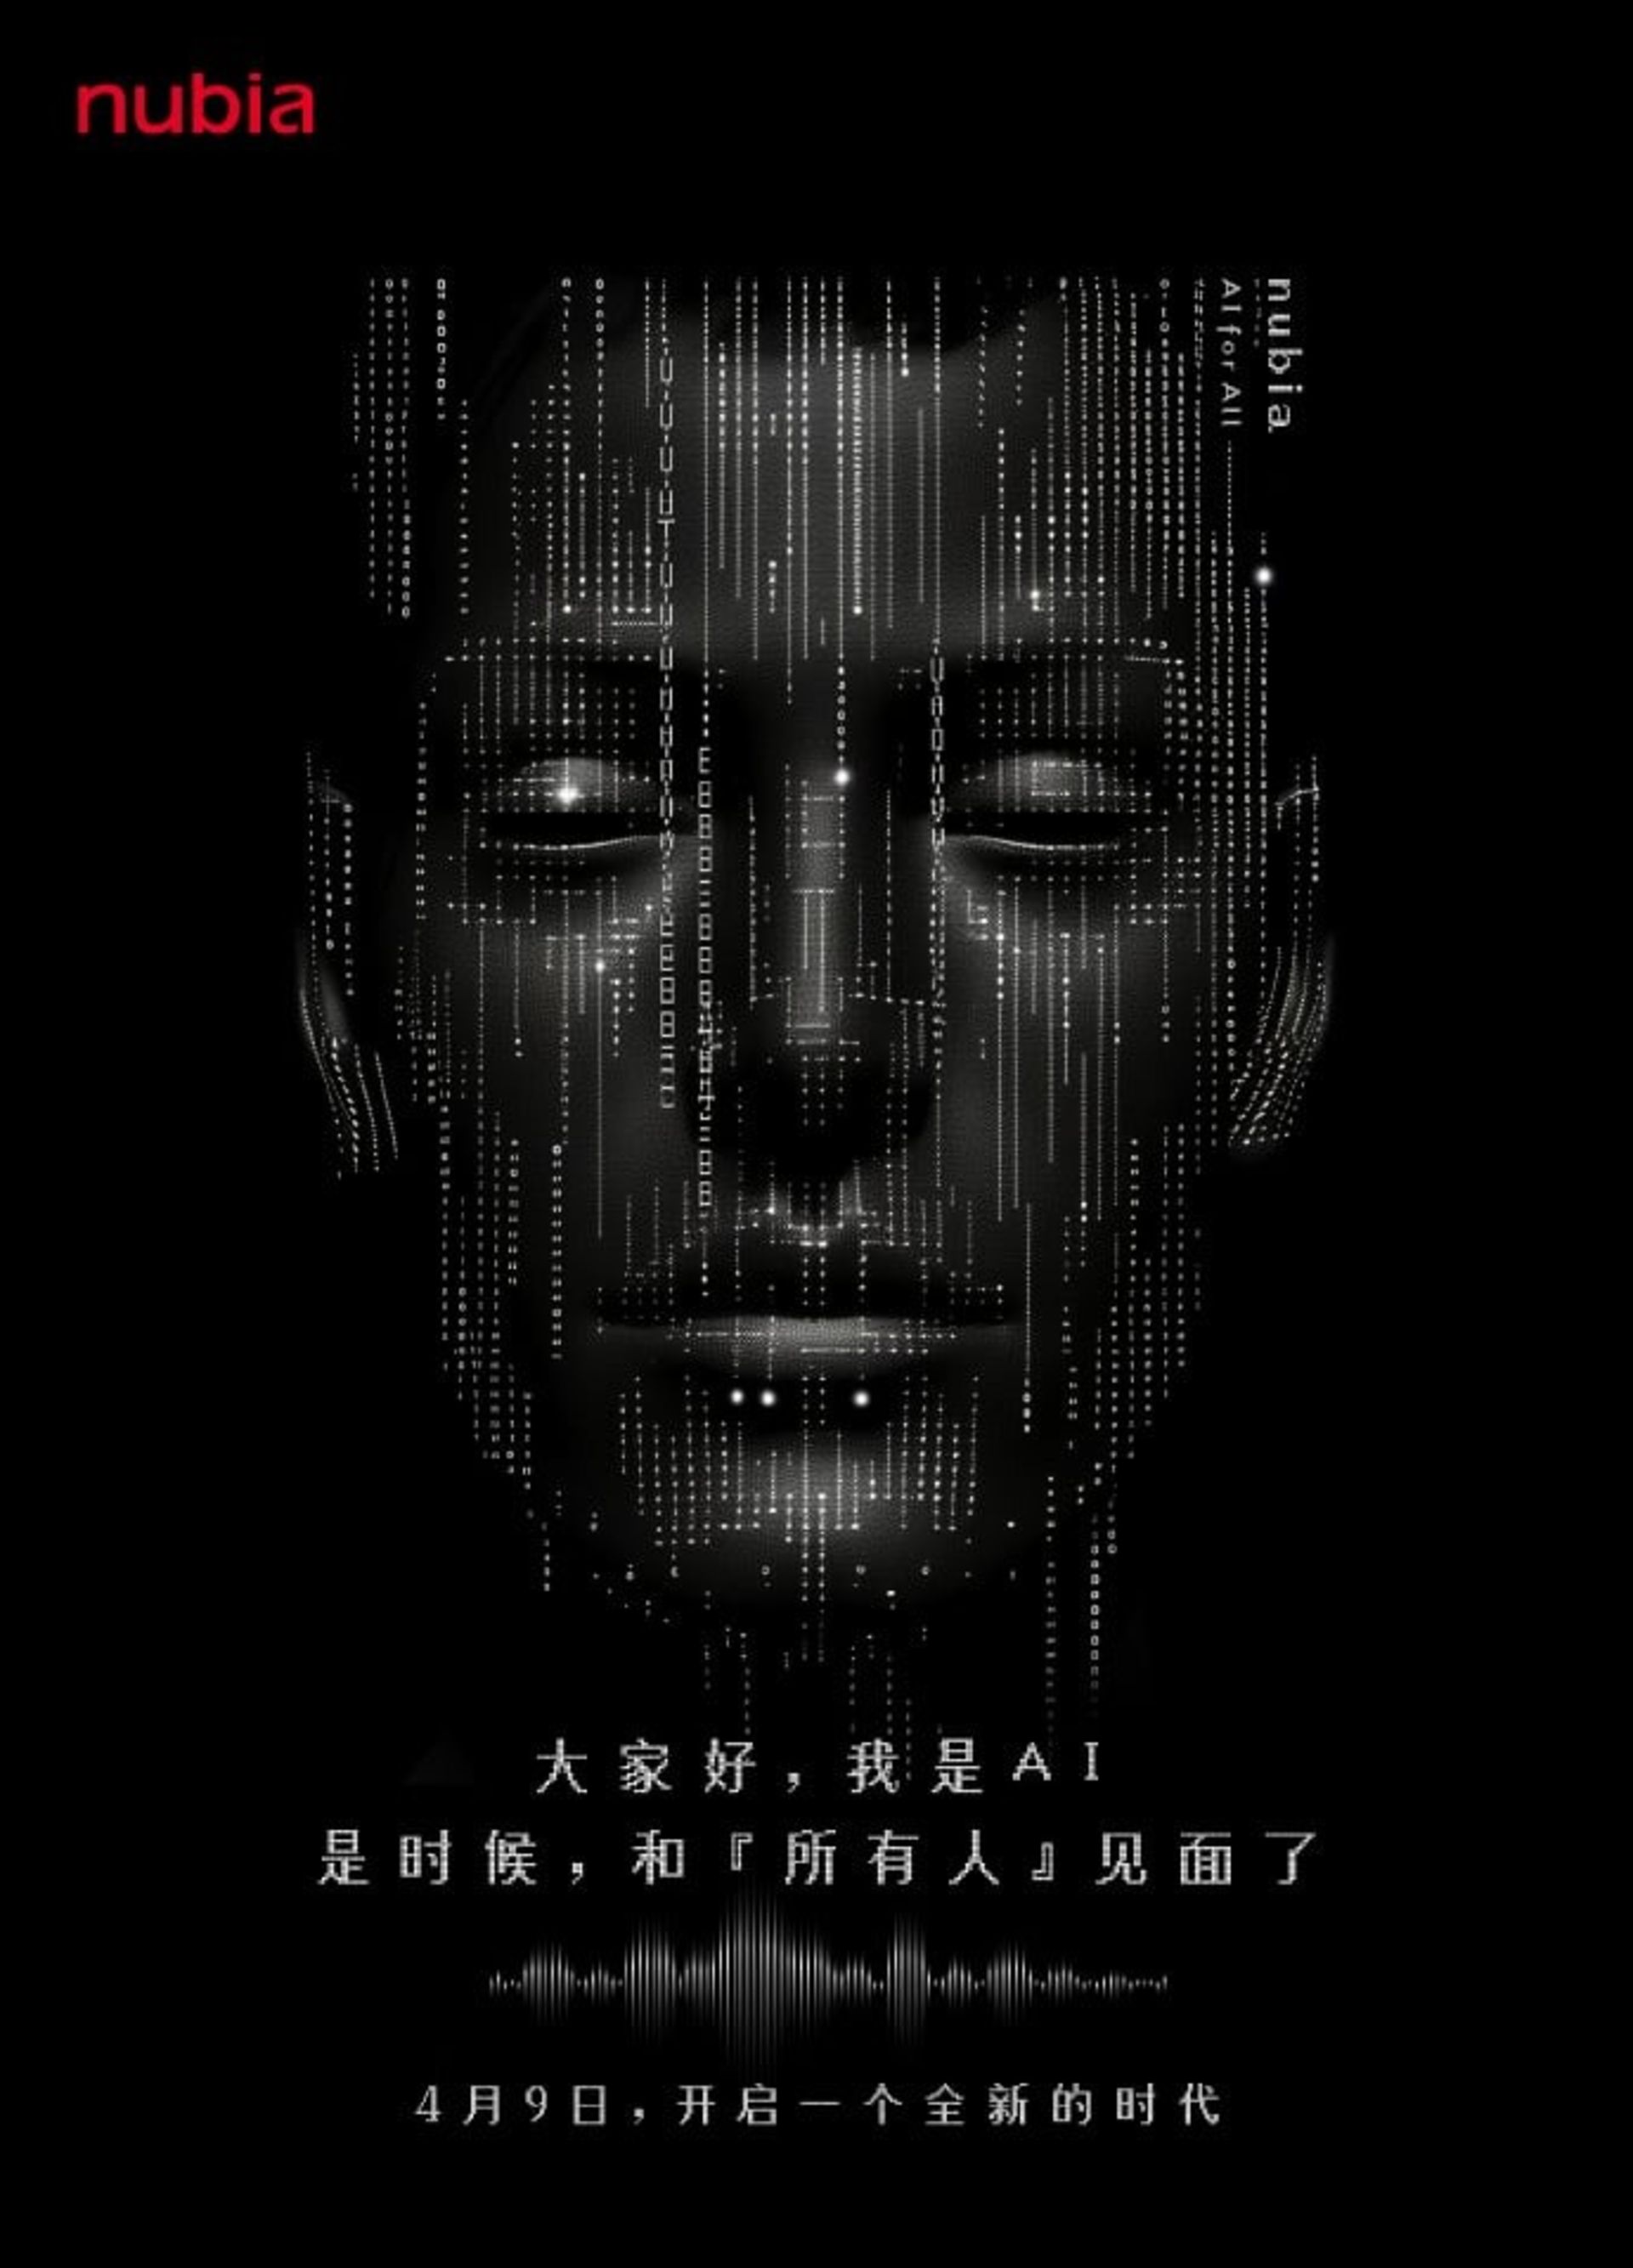 نمایش صورت انسان ساخته شده از کد